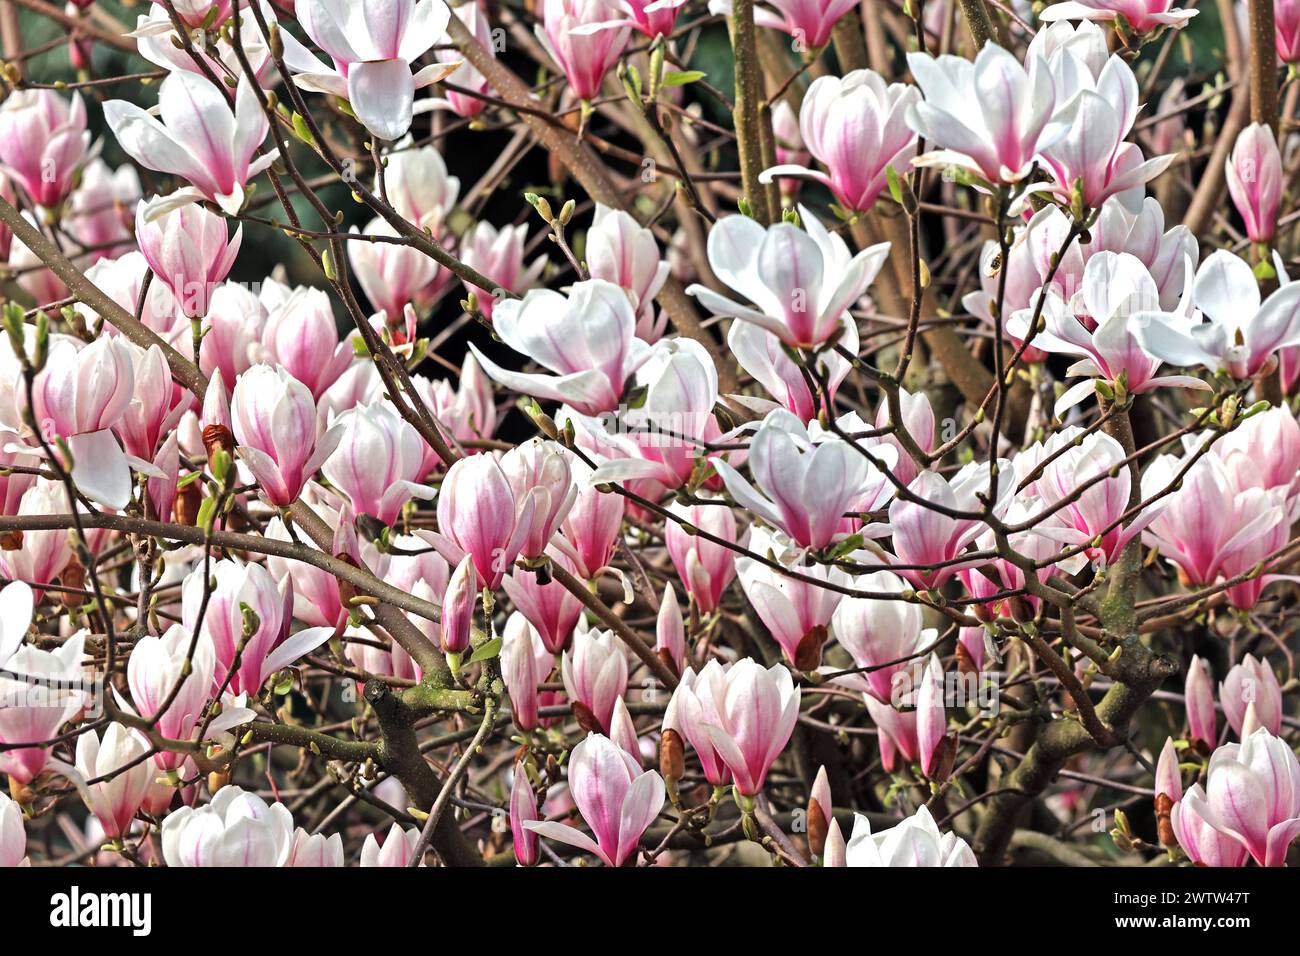 Blütezeit der Ziergehölze Die Blüten einer Magnolie zur Blütezeit im Frühling *** Flowering time of ornamental shrubs The flowers of a magnolia in bloom in spring Stock Photo